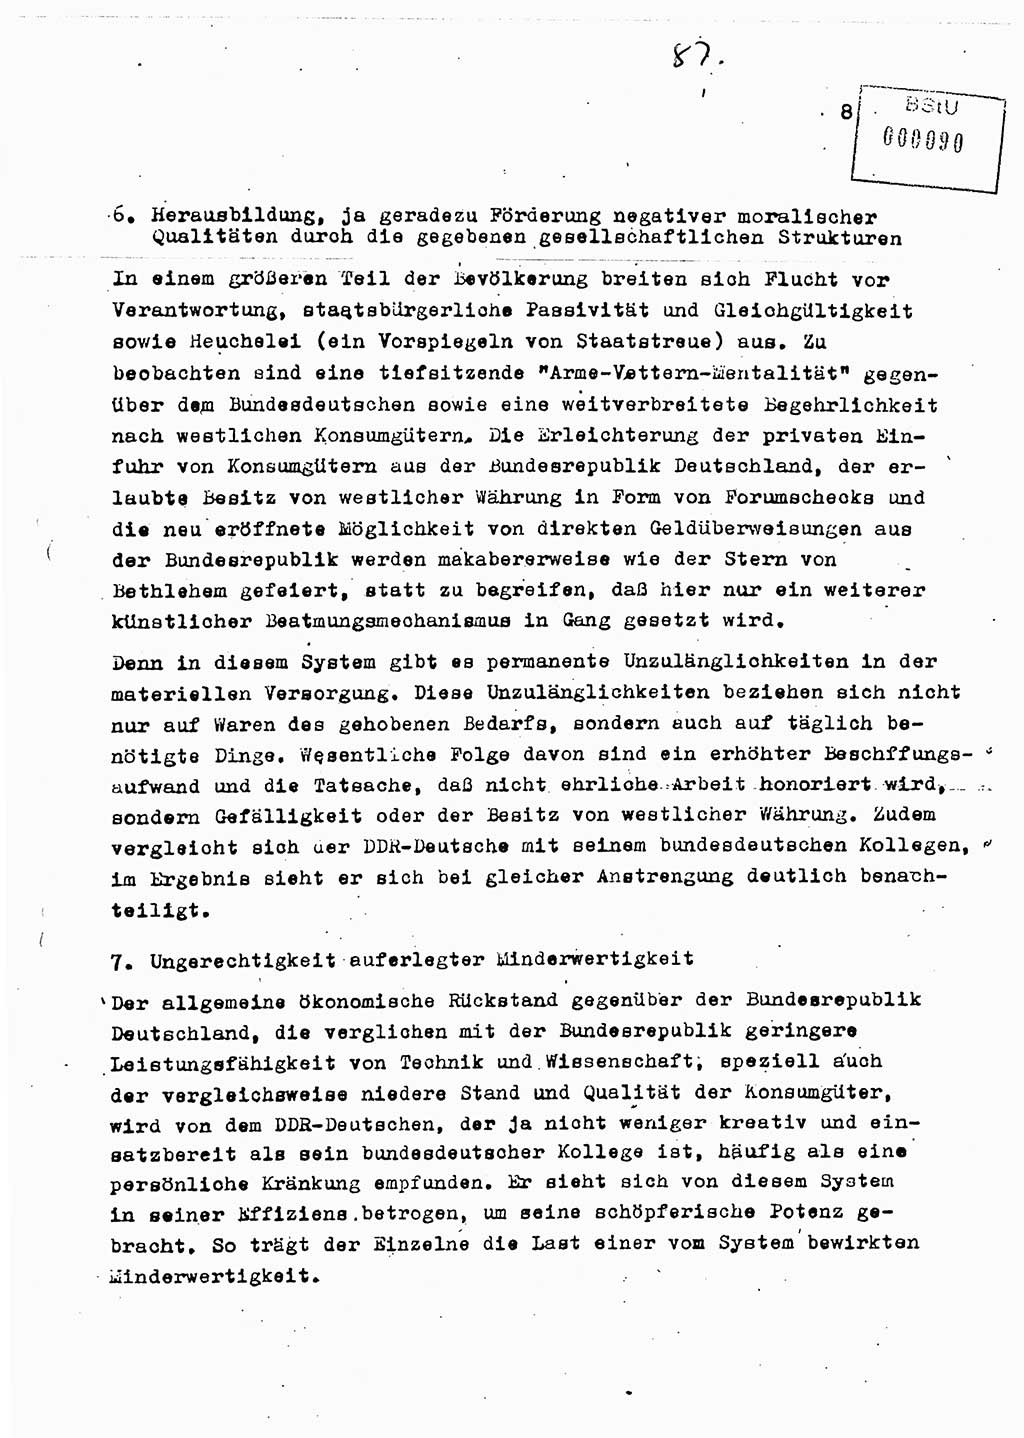 Diplomarbeit Major Günter Müller (HA Ⅸ/9), Ministerium für Staatssicherheit (MfS) [Deutsche Demokratische Republik (DDR)], Juristische Hochschule (JHS), Vertrauliche Verschlußsache (VVS) o001-402/89, Potsdam 1989, Seite 87 (Dipl.-Arb. MfS DDR JHS VVS o001-402/89 1989, S. 87)